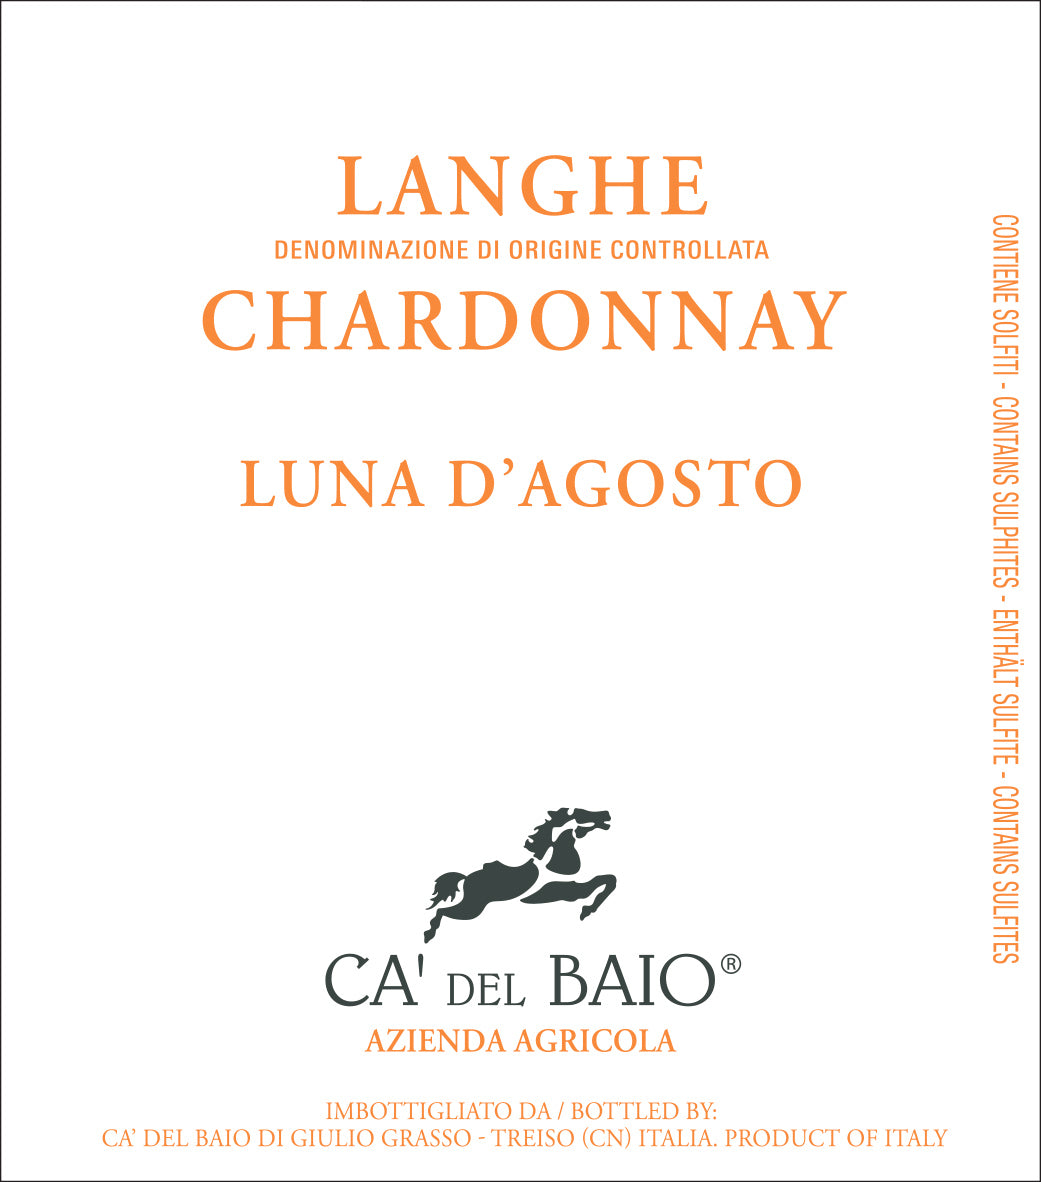 Ca del Baio Chardonnay Luna d'Agosto 2021